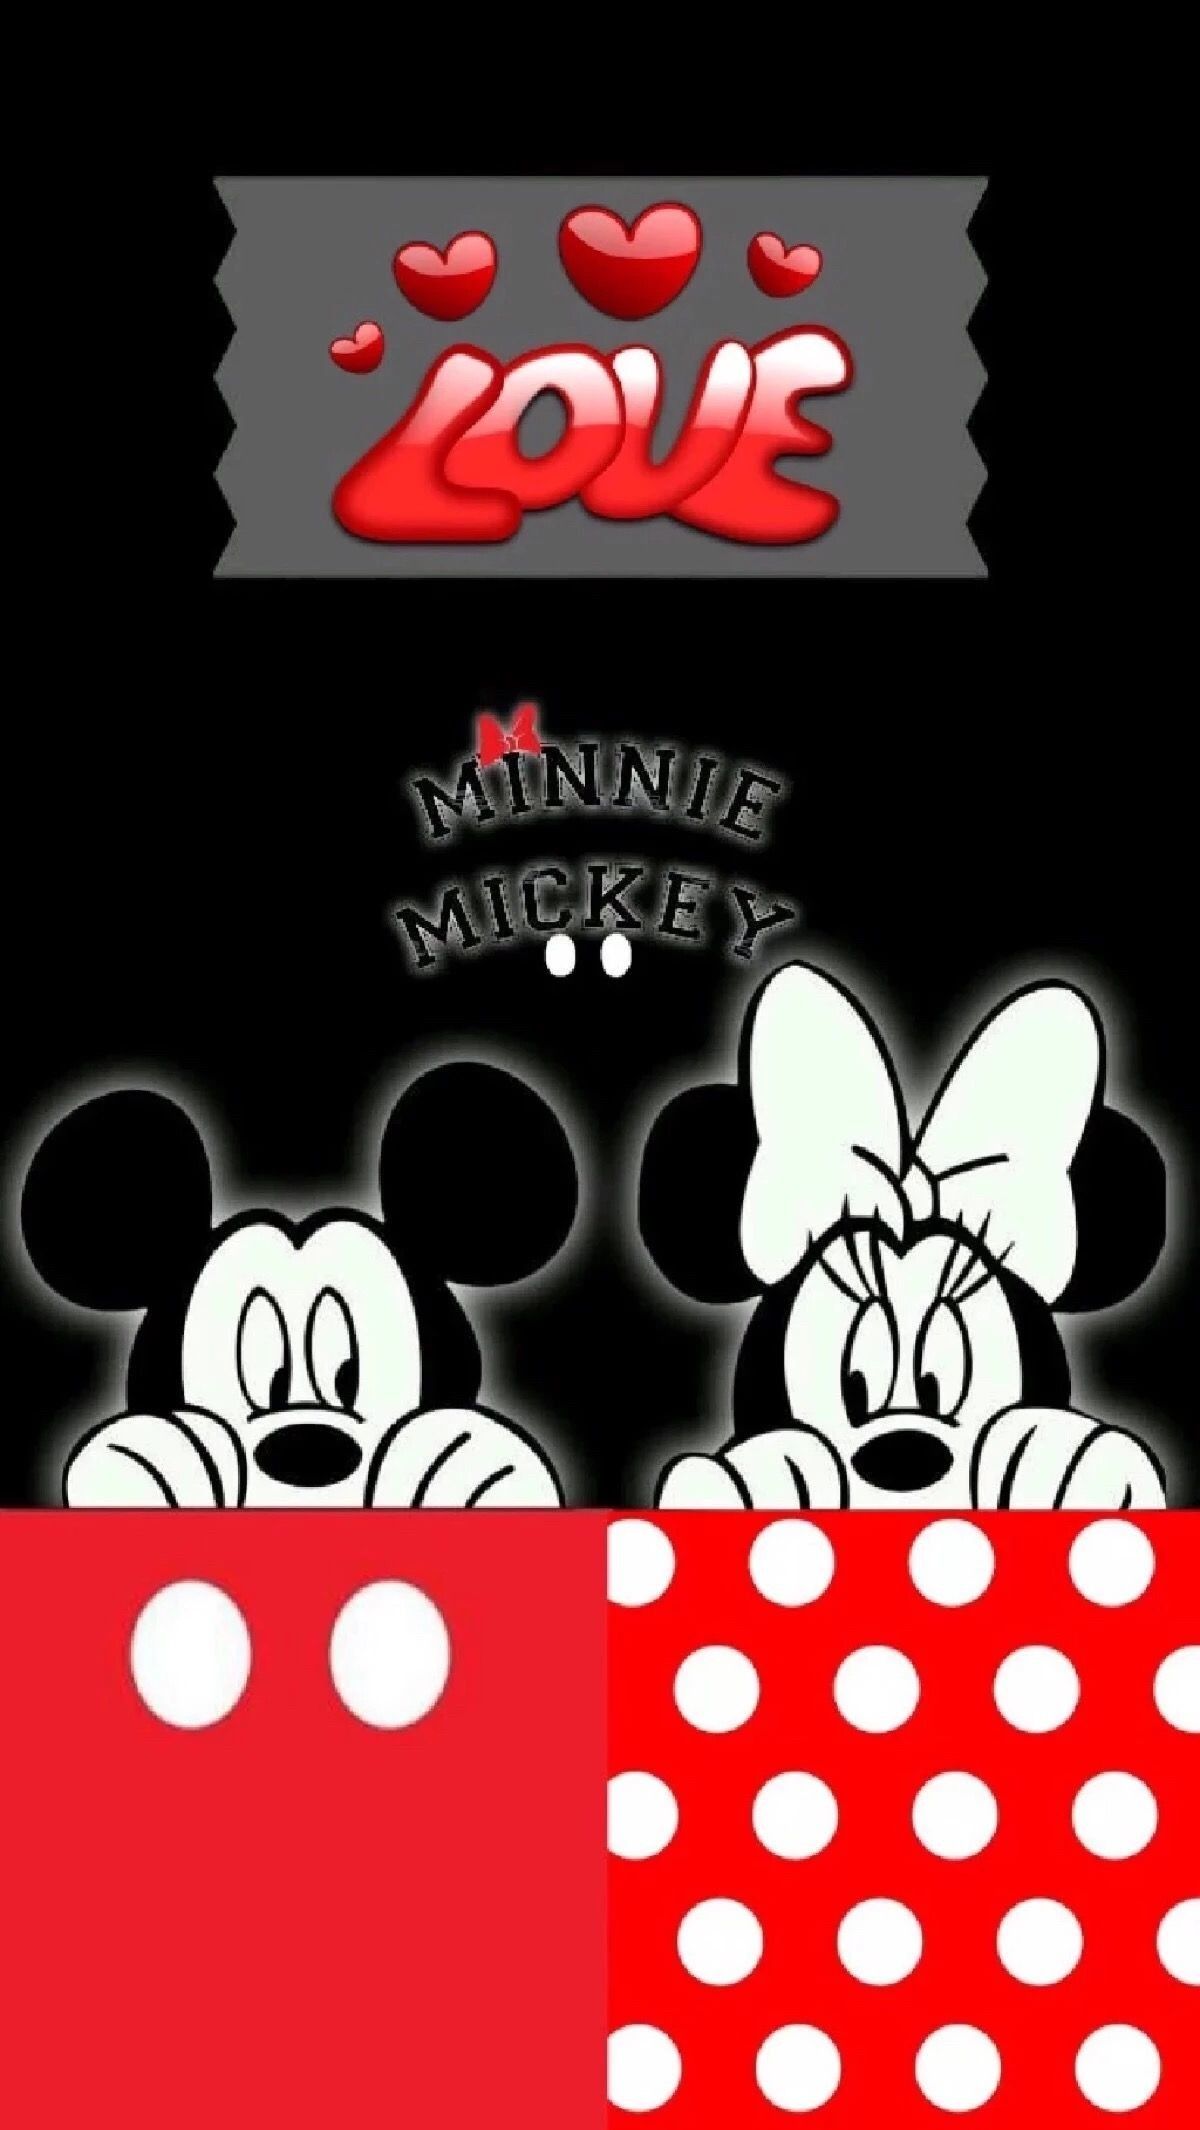 Fondos de Mickey Mouse (más de 71 imágenes de fondo)